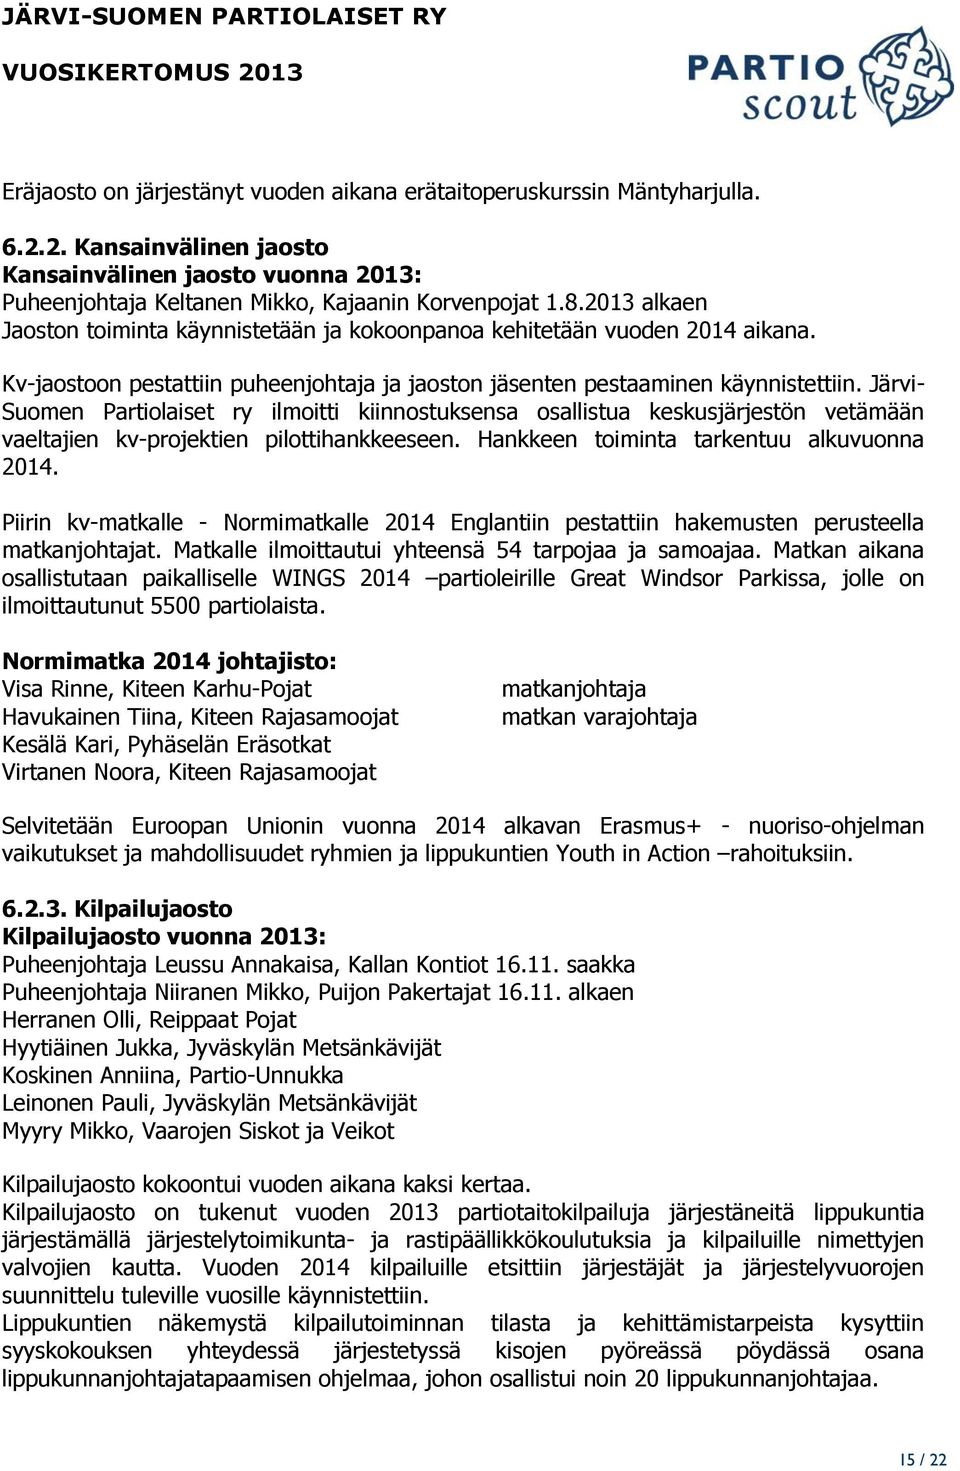 Järvi- Suomen Partiolaiset ry ilmoitti kiinnostuksensa osallistua keskusjärjestön vetämään vaeltajien kv-projektien pilottihankkeeseen. Hankkeen toiminta tarkentuu alkuvuonna 2014.